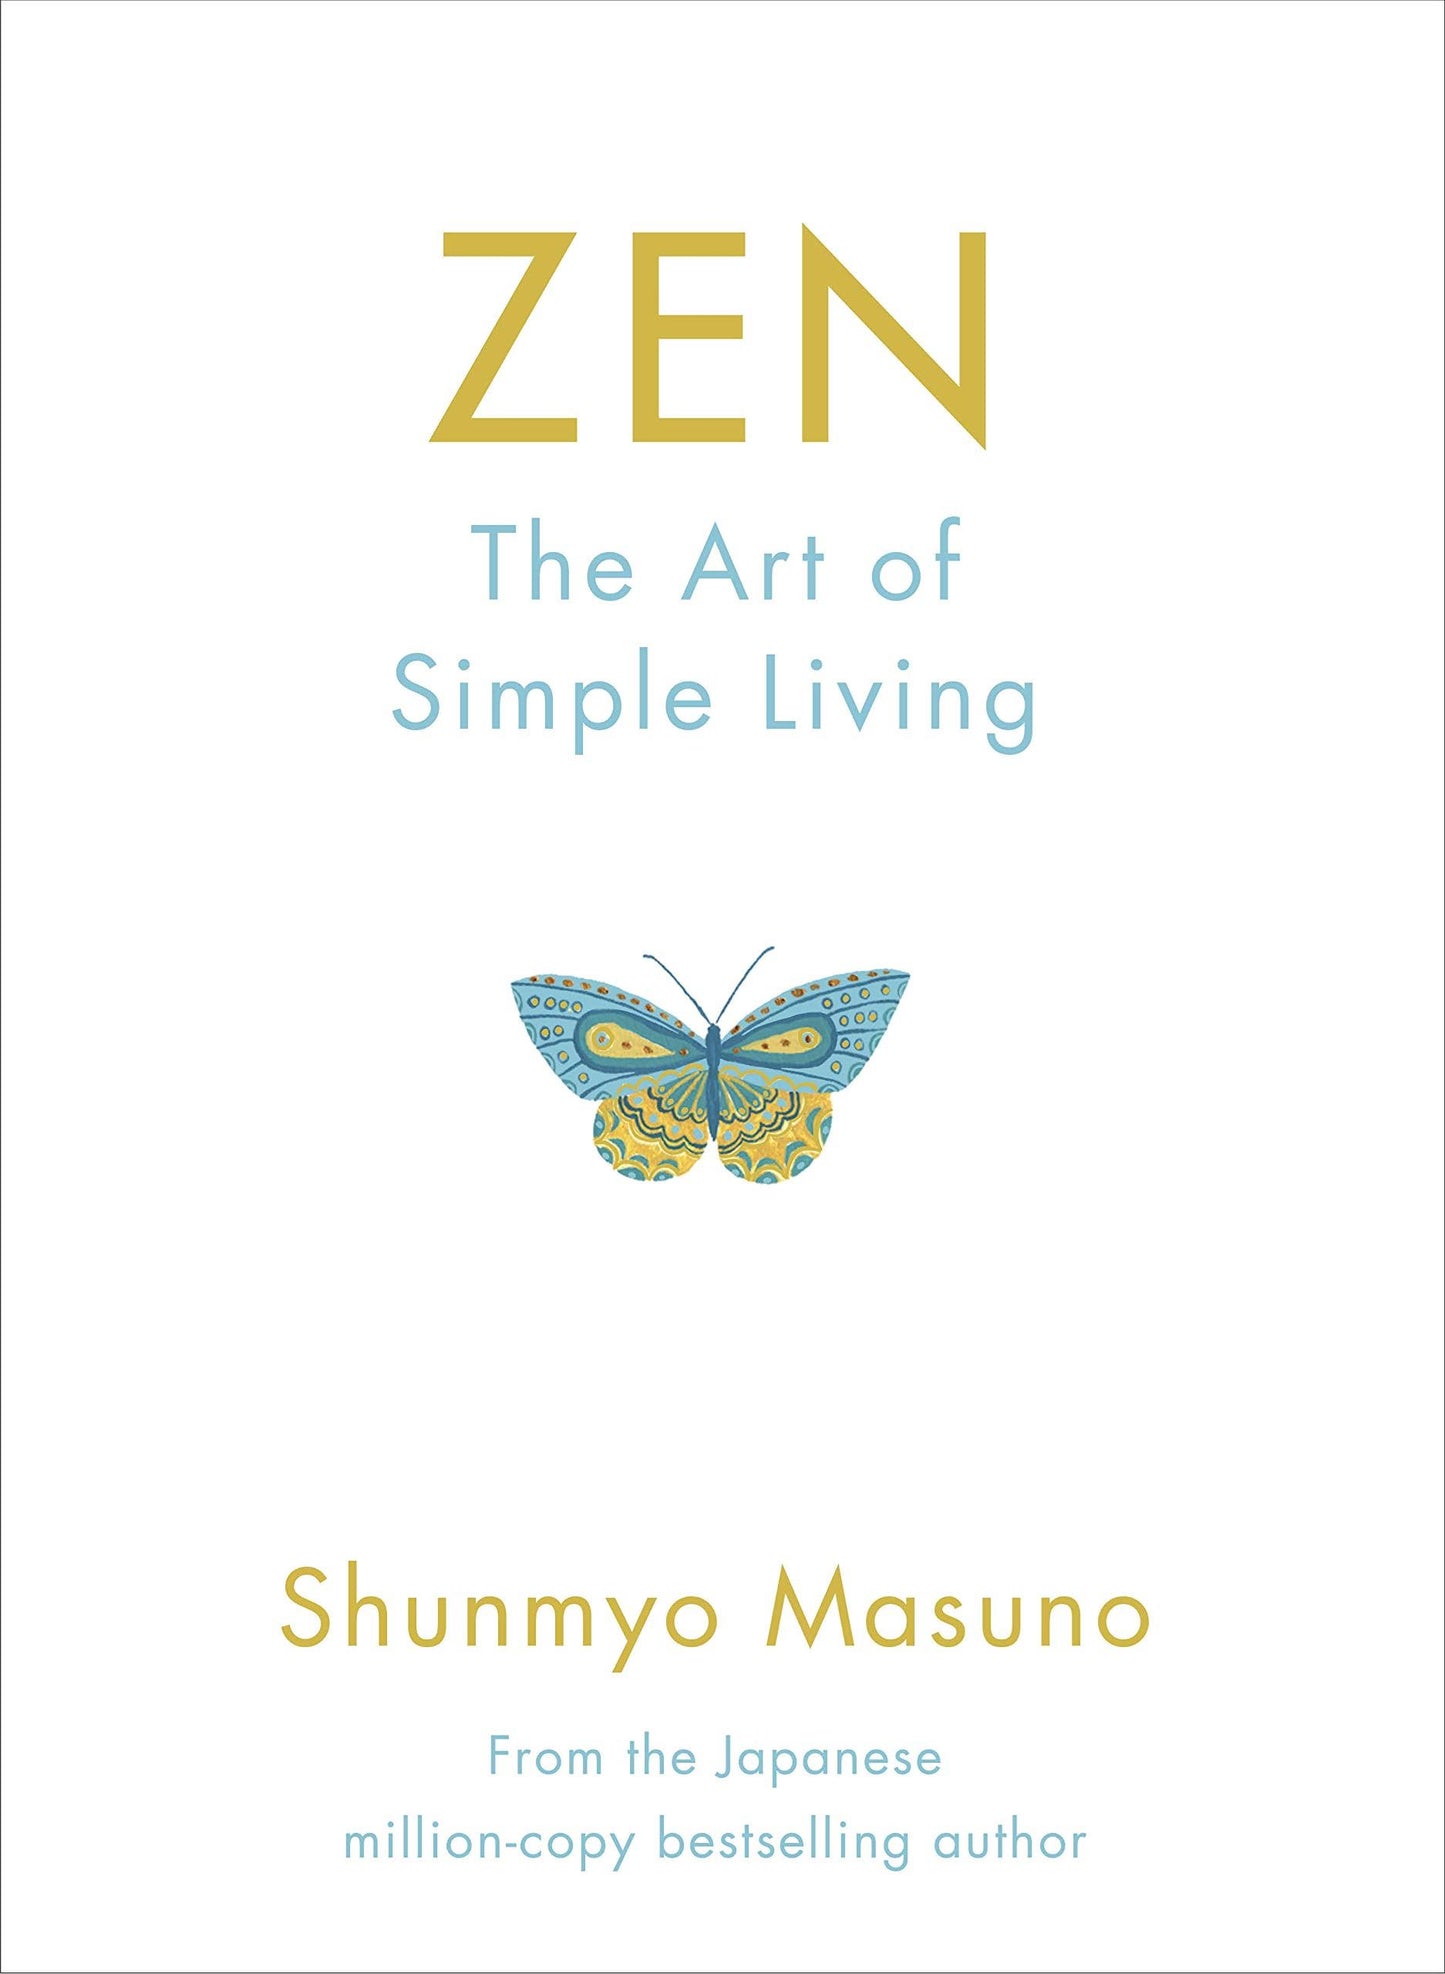 Zen - The Art of Simple Living